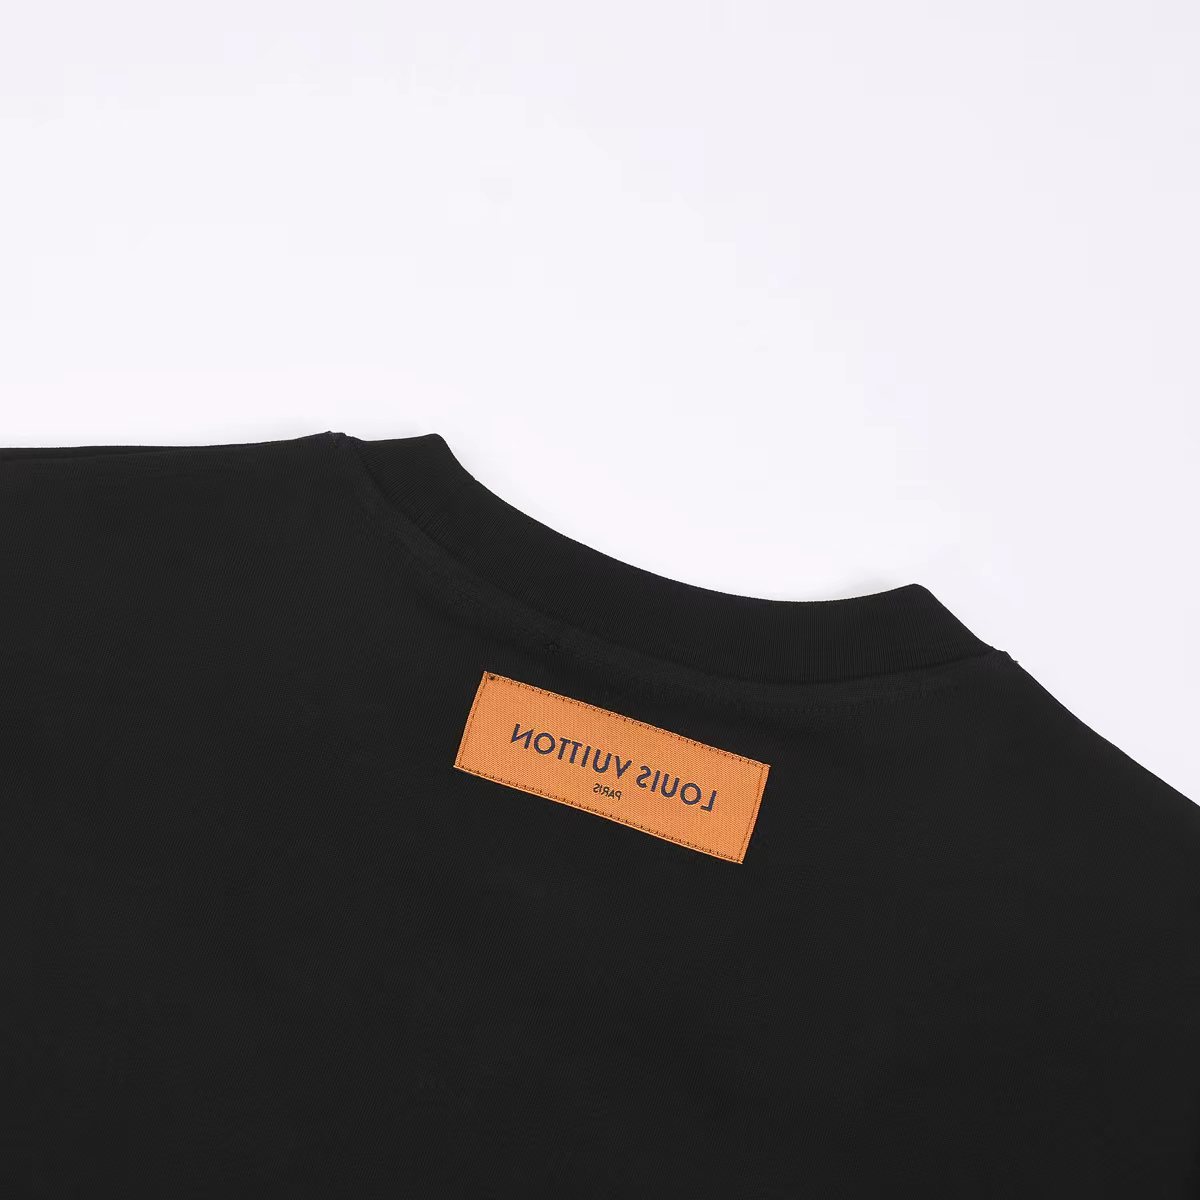 新款上新1V24ss高奢刺绣字母短袖T恤这款短袖也是路易家的代表性产物满身经典元素设计并采用刺绣的工艺配